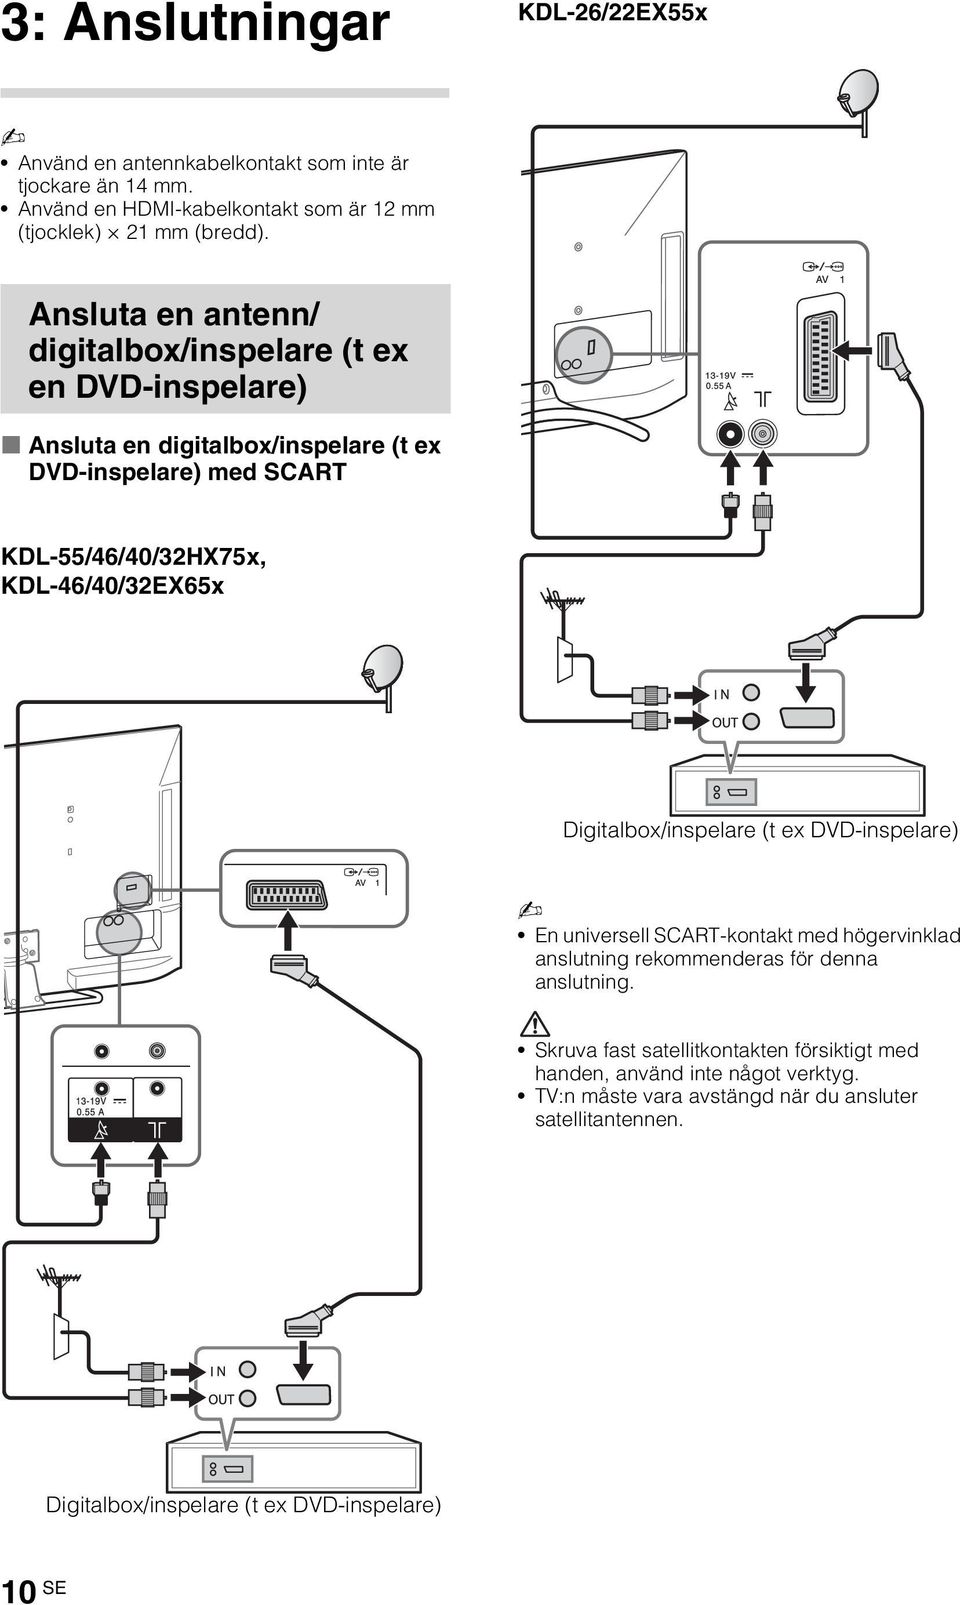 KDL-46/40/32EX65x Digitalbox/inspelare (t ex DVD-inspelare) En universell SCART-kontakt med högervinklad anslutning rekommenderas för denna anslutning.